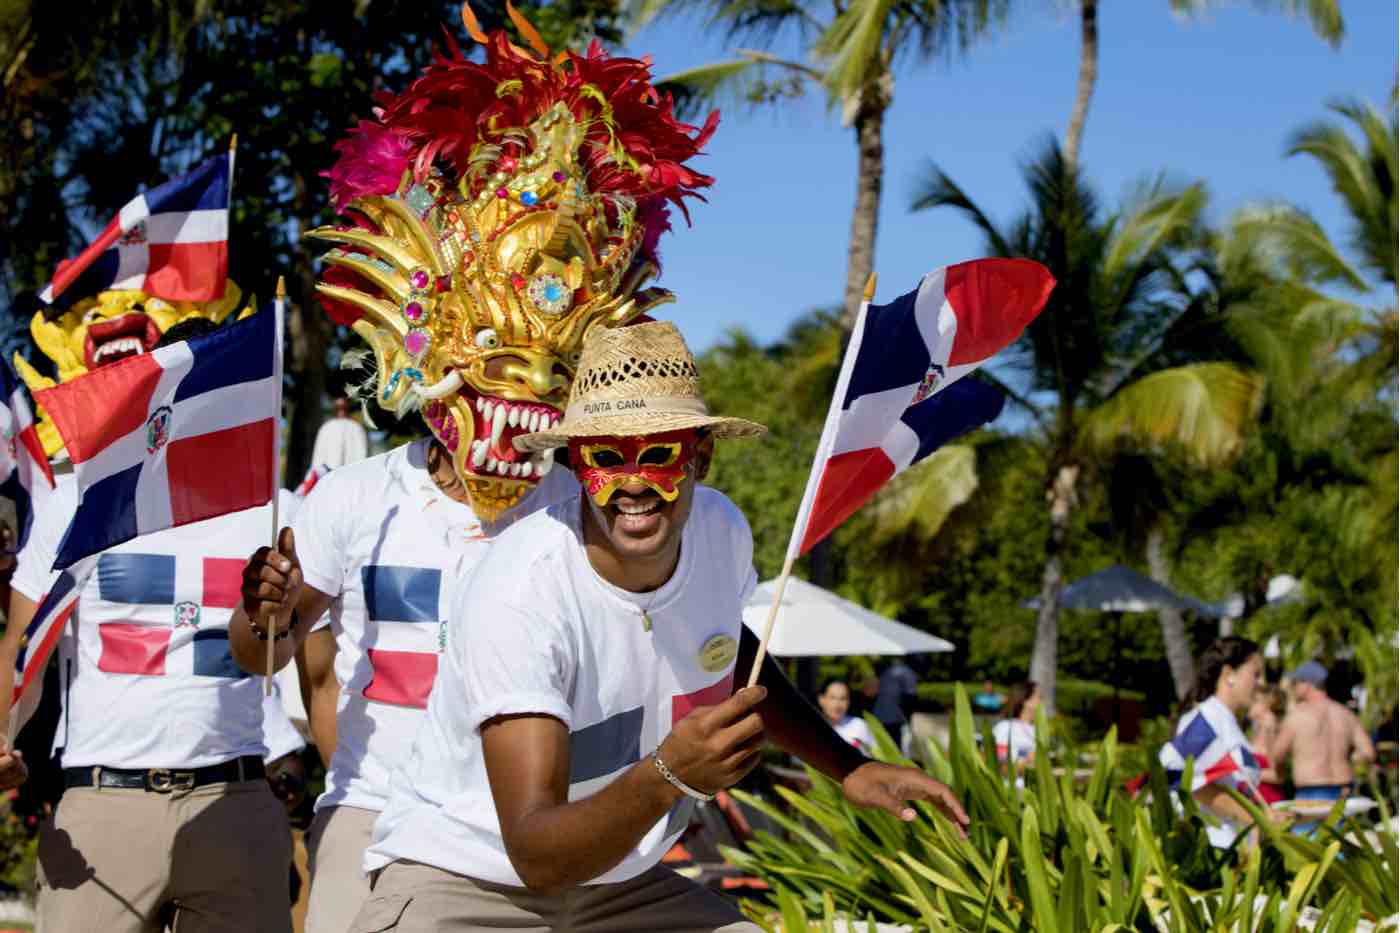 La República Dominicana se sitúa como uno de los mercados emergentes más atractivos, según Morgan Stanley